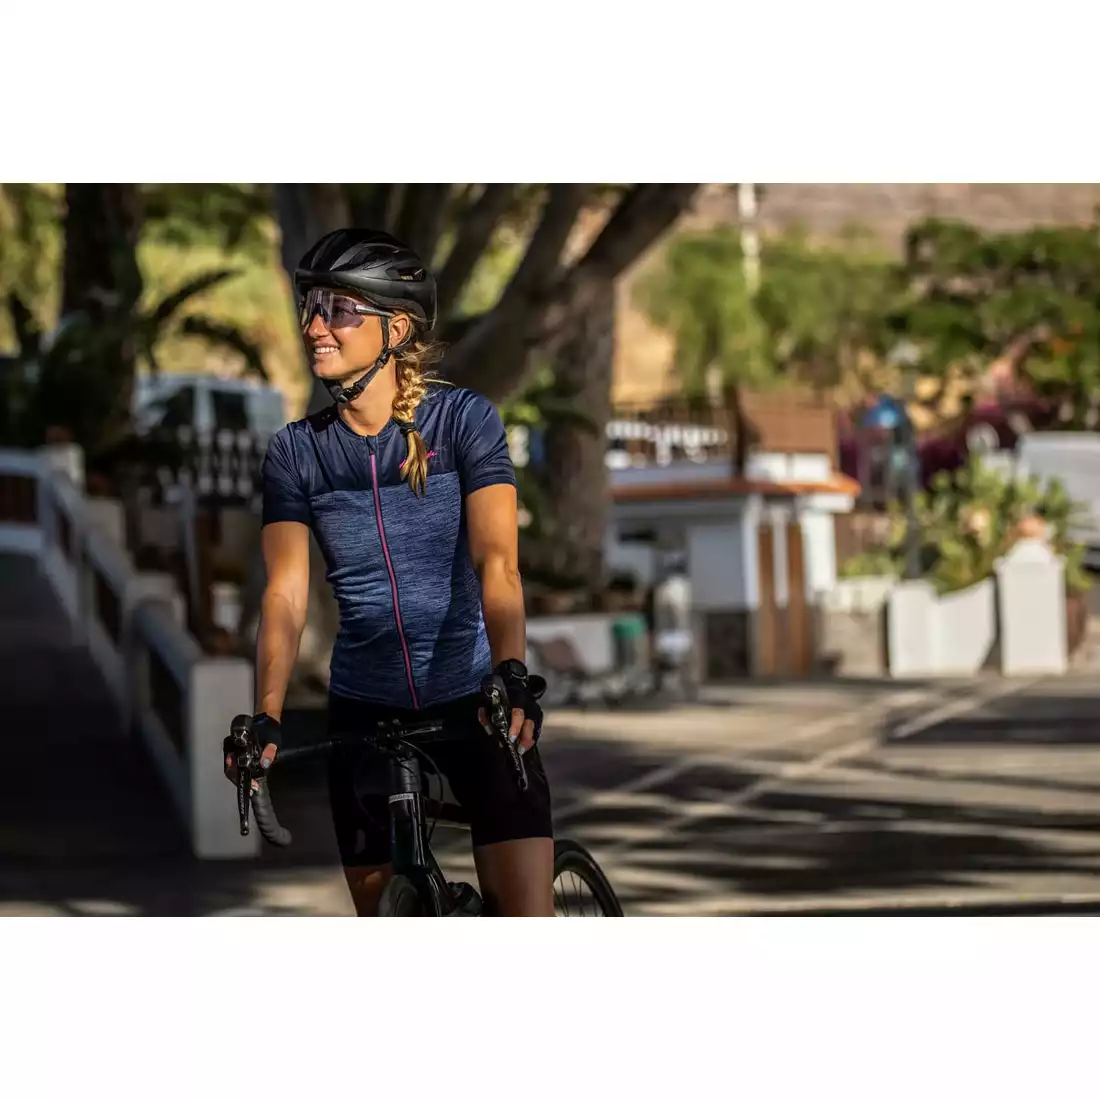 Rogelli MELANGE dámský cyklistický dres, tmavě modrá a růžová